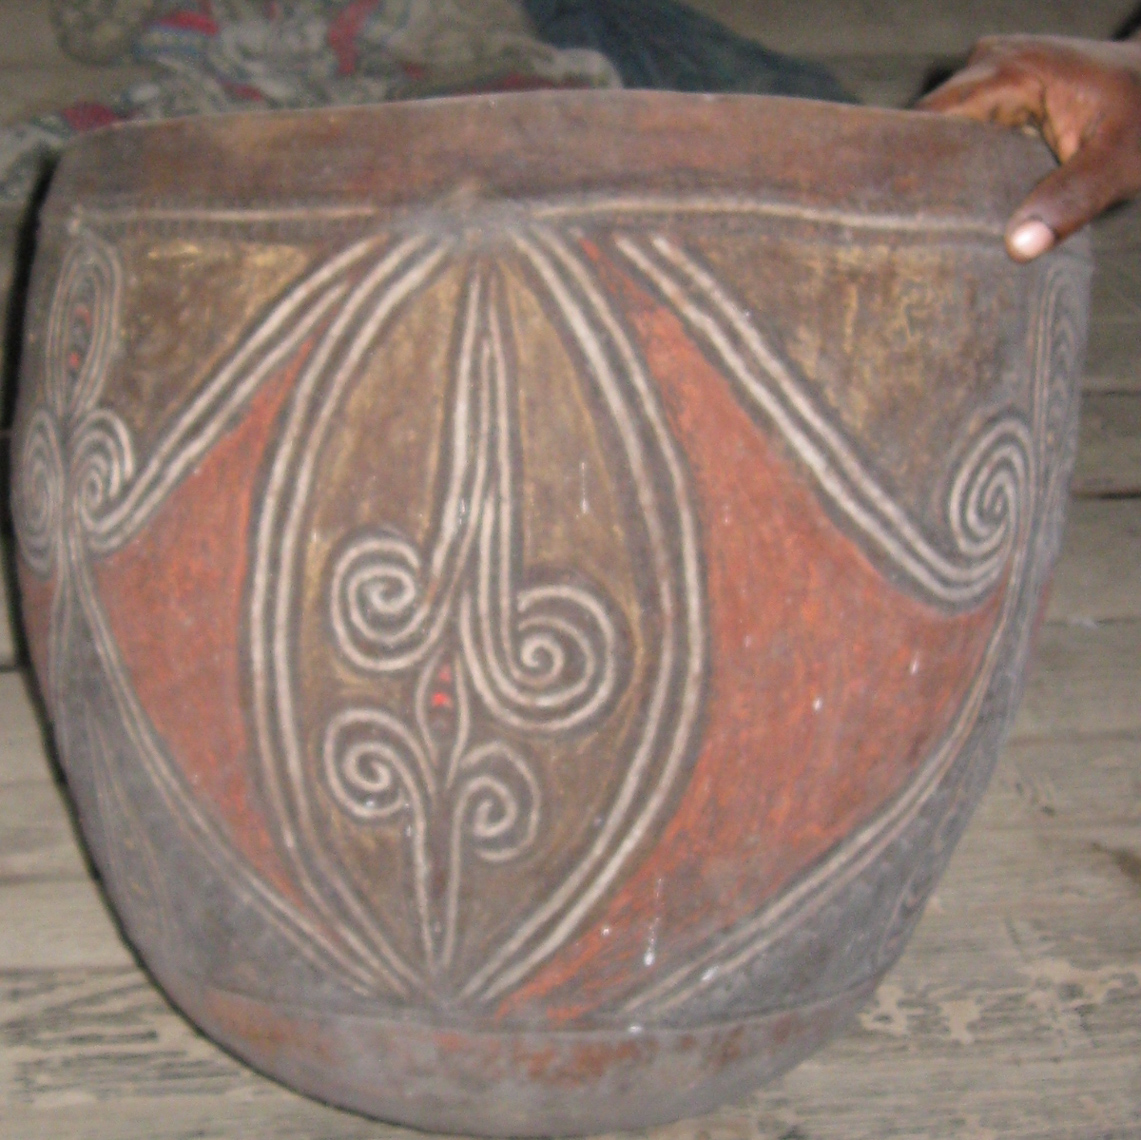 Yangoru Boiken Clay Pot-New Guinea Art.